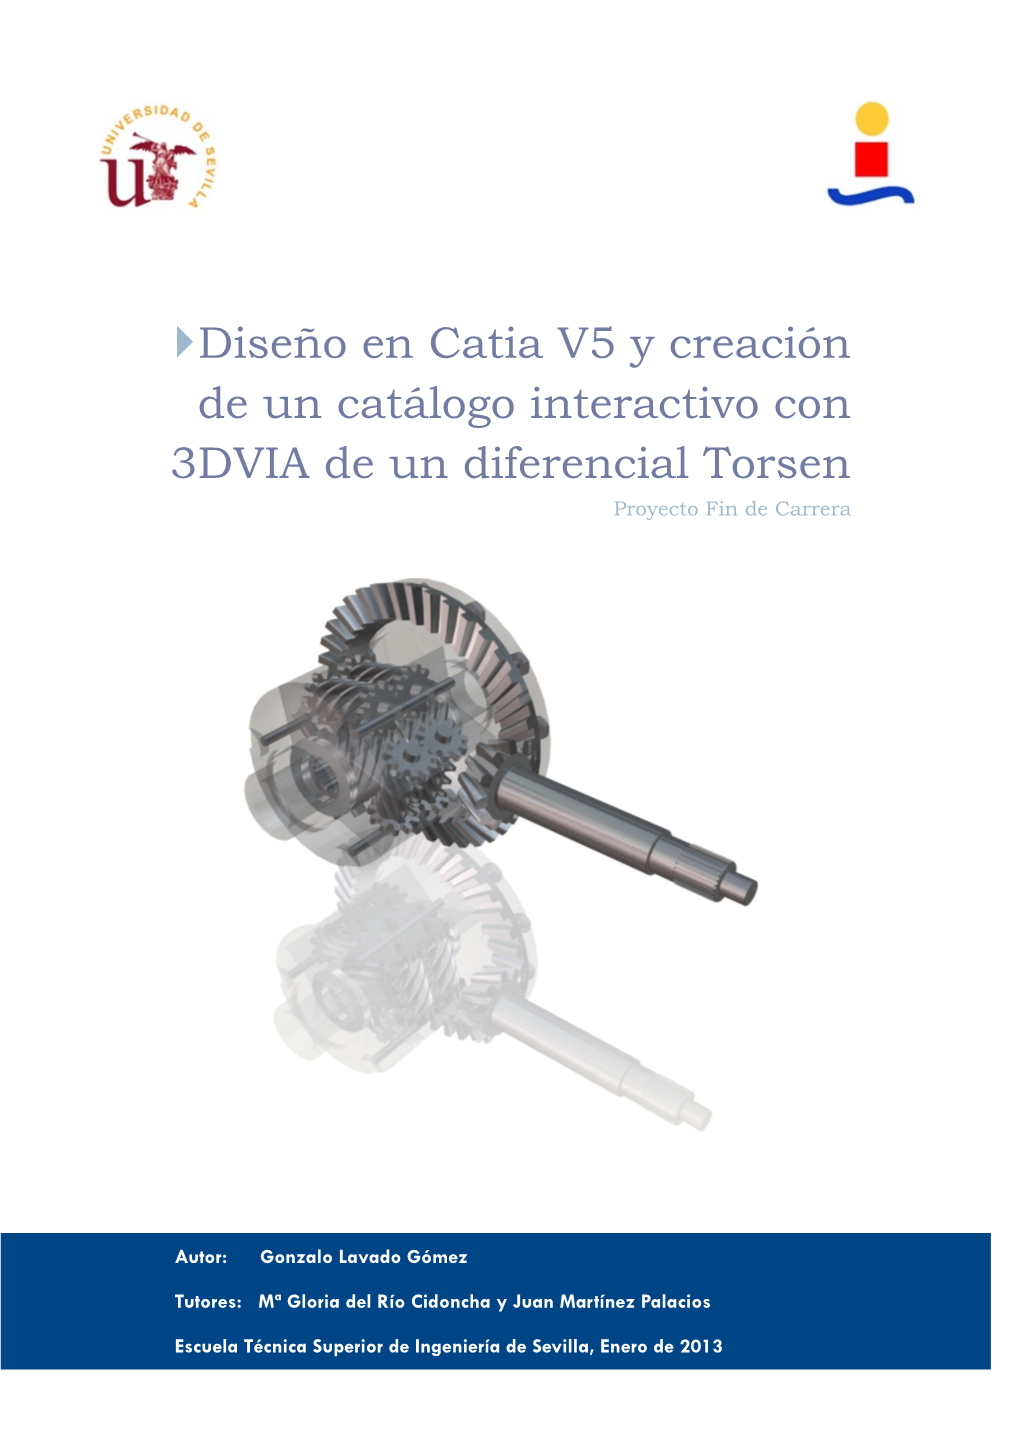 Diseño En Catia V5 Y Creación De Un Catálogo Interactivo Con 3DVIA De Un Diferencial Torsen Proyecto Fin De Carrera